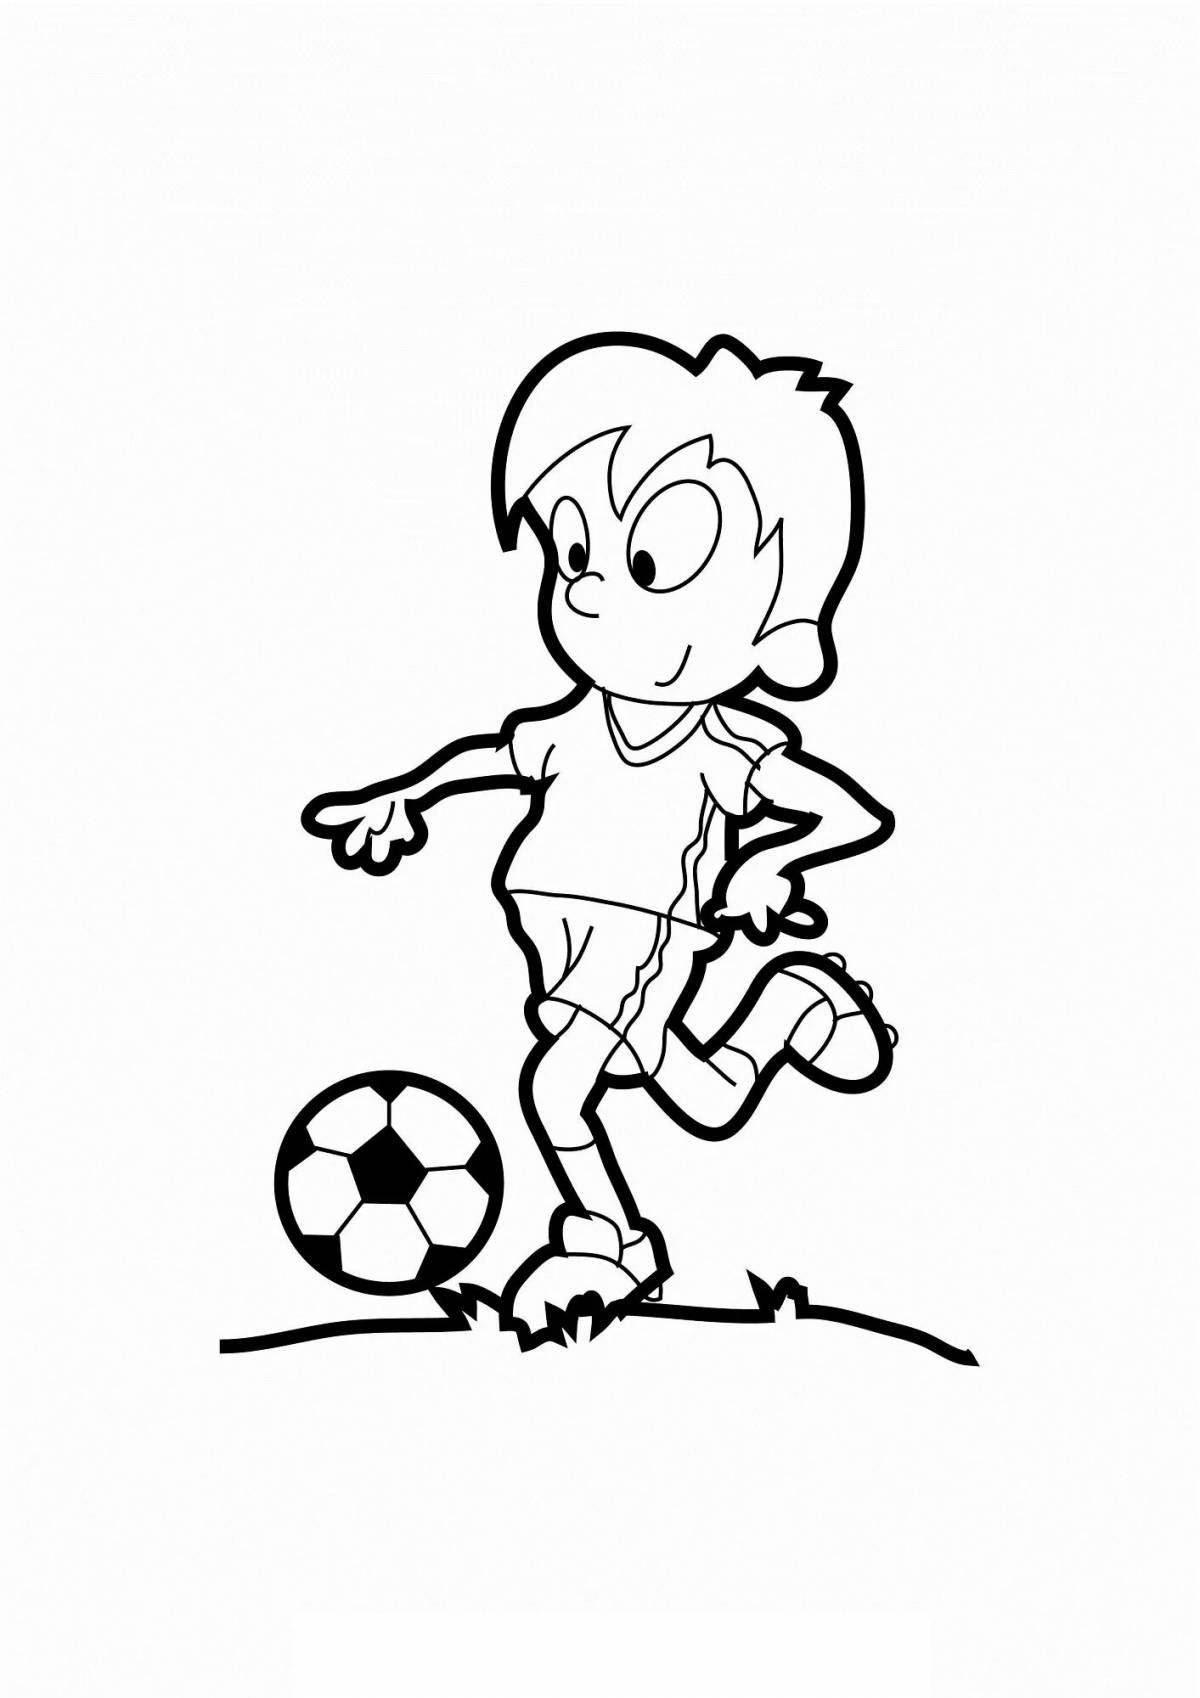 Анимированная страница раскраски мальчика-футболиста